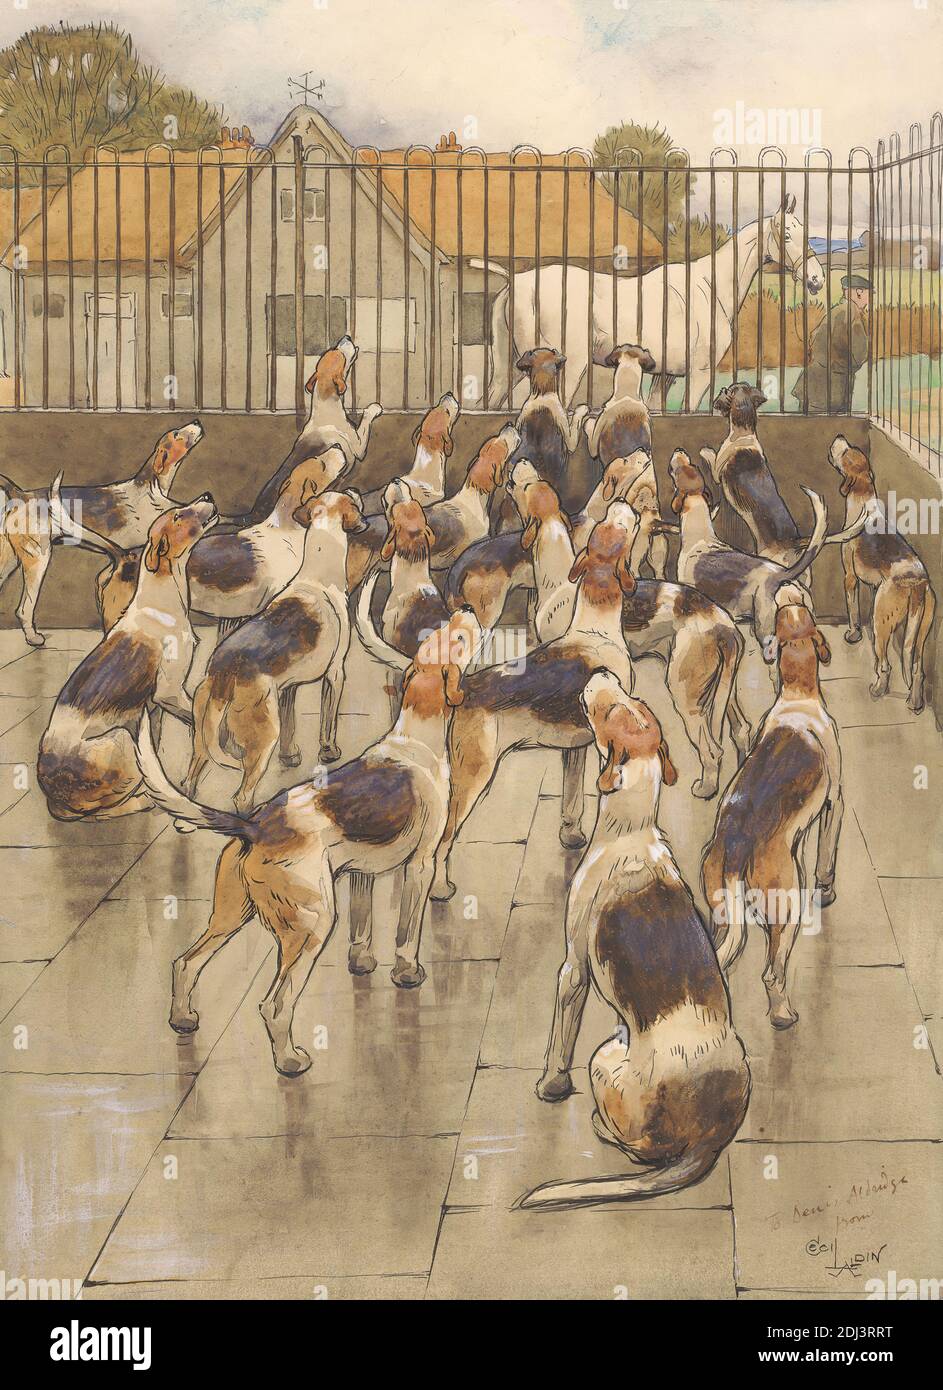 The Hounds started Suddenly to Howl in Chorus', Cecil Charles Windsor Aldin, 1870–1935, britisch, undatiert, Aquarell, Feder und schwarze Tinte, Graphit und Gouache auf Medium, leicht strukturiert, beige, gewobene Papier, Blatt: 11 7/16 × 8 1/2 Zoll (29.1 × 21.6 cm) und Bild: 10 13/16 × 7 7/8 Zoll (27.5 × 20 cm), Tierkunst Stockfoto